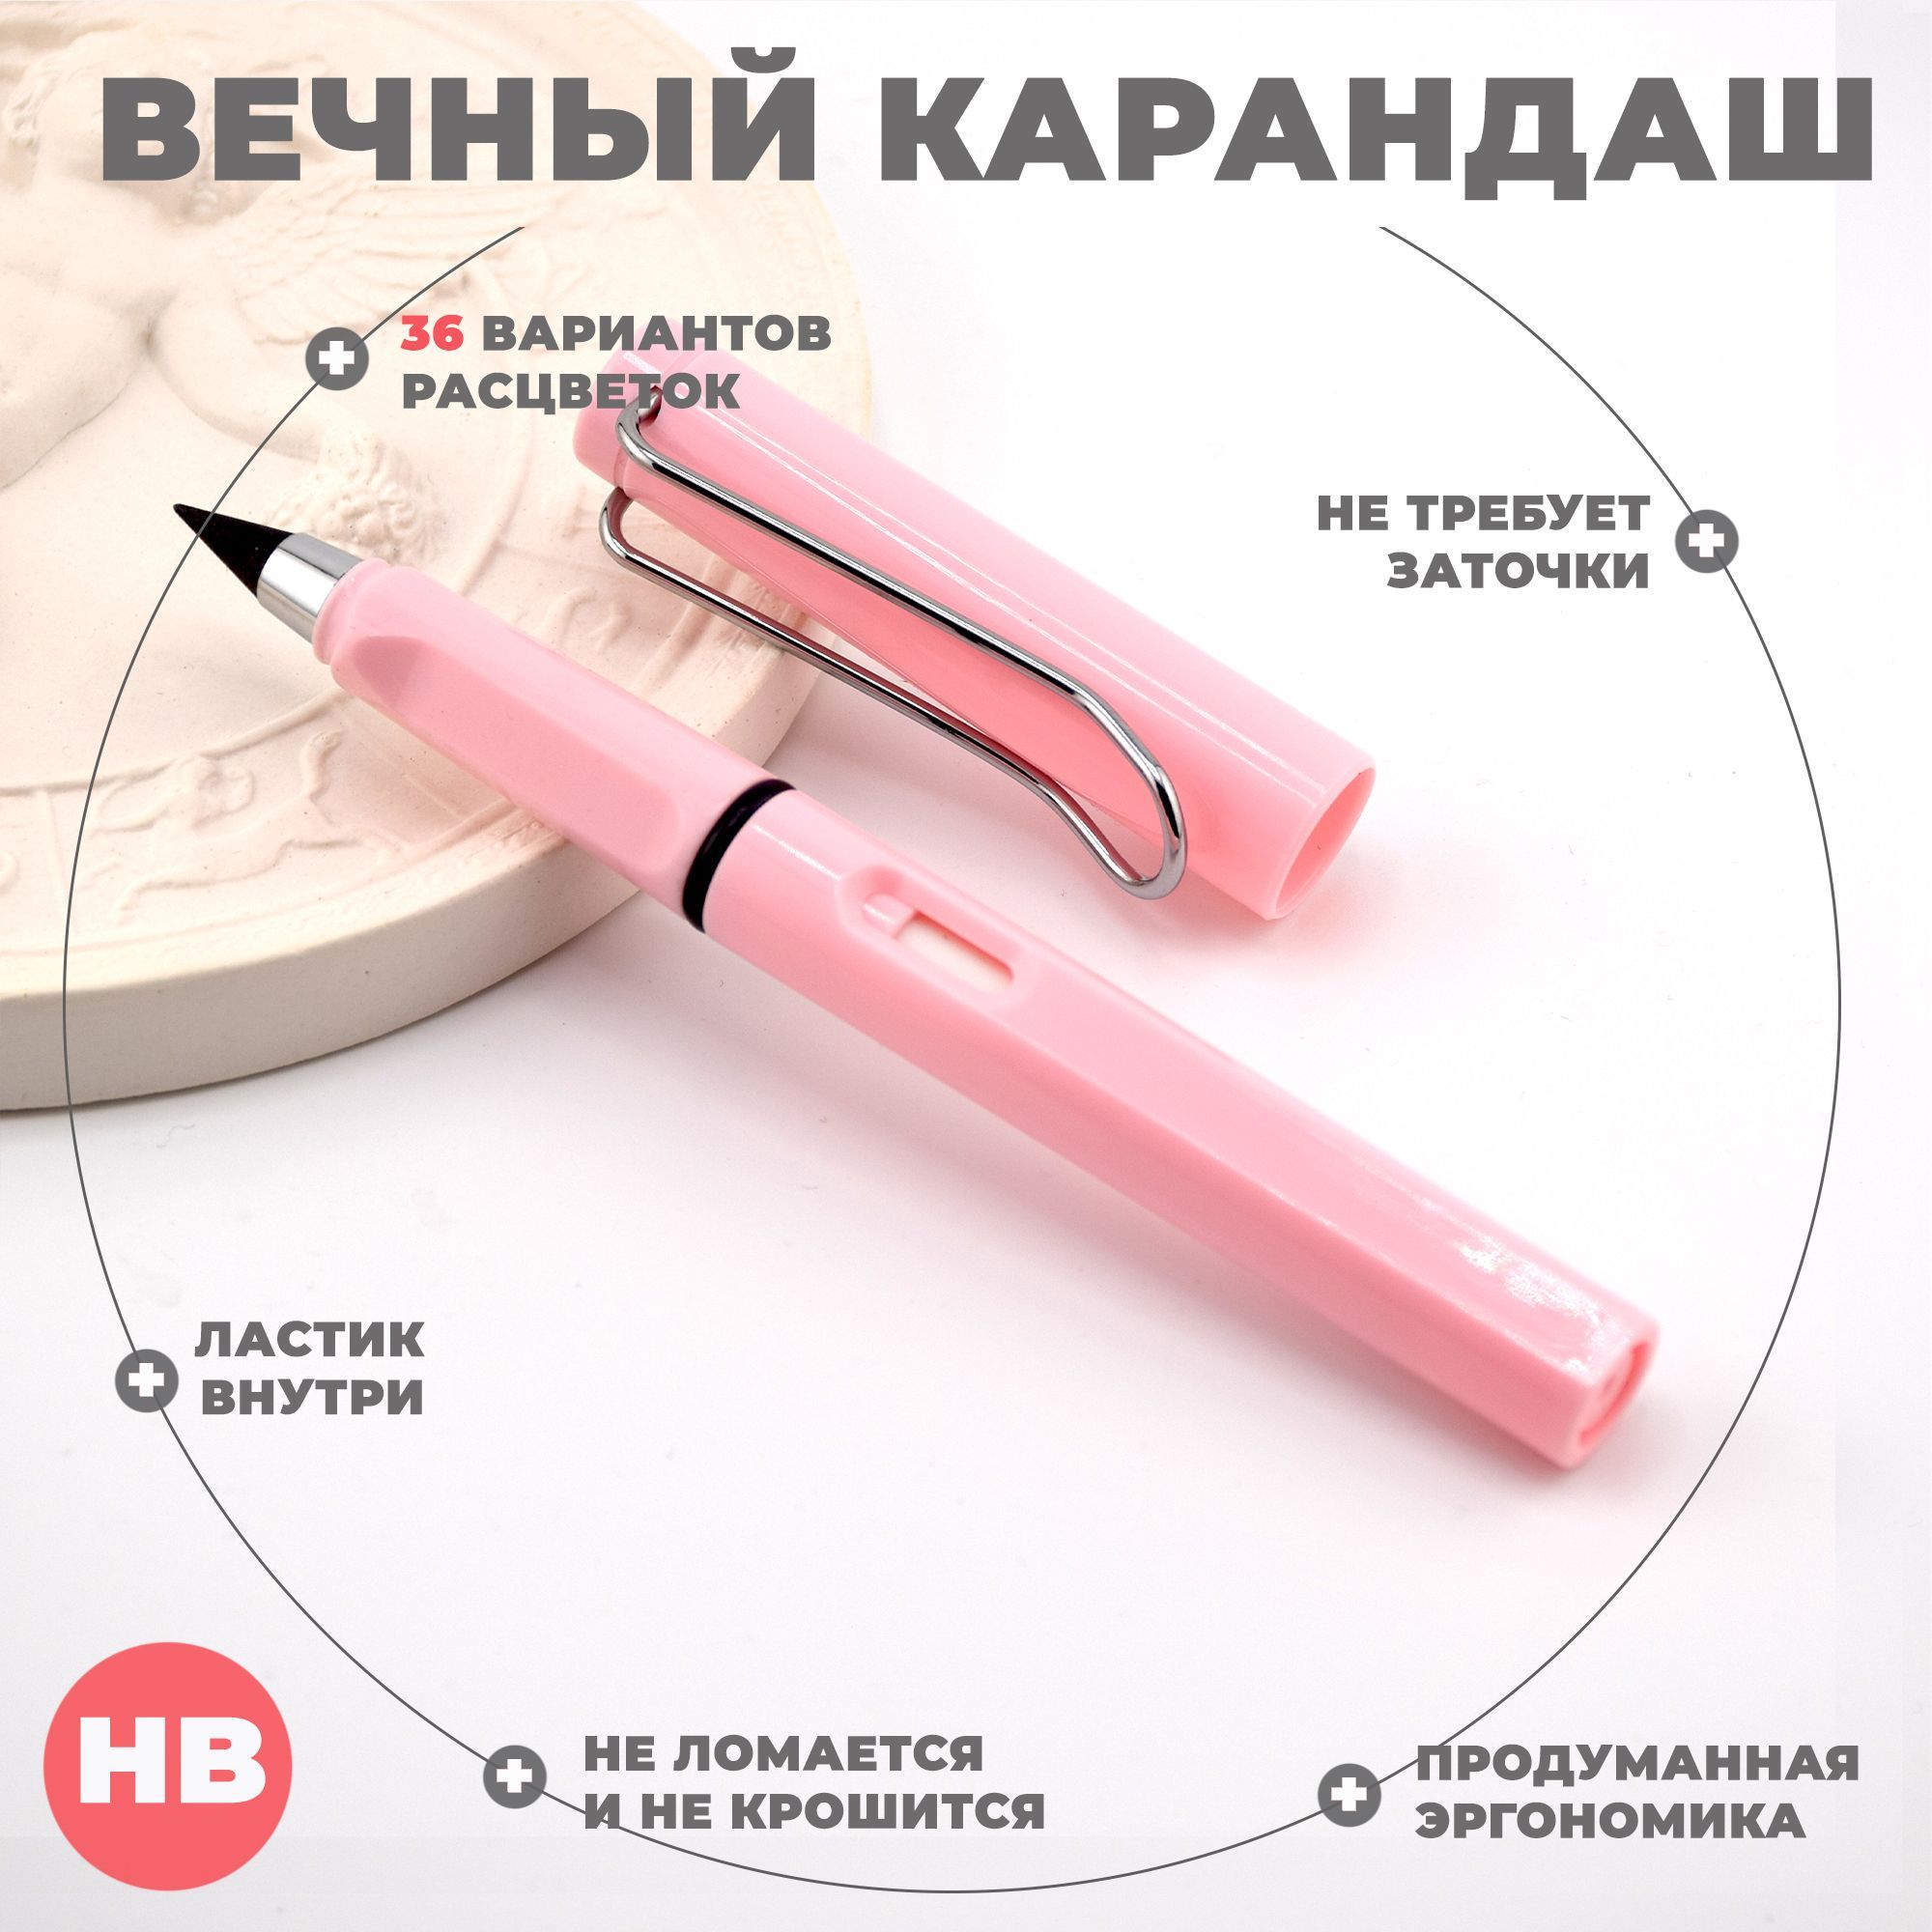 Вечный карандаш Aihao, HB, 0,5 мм, розовый